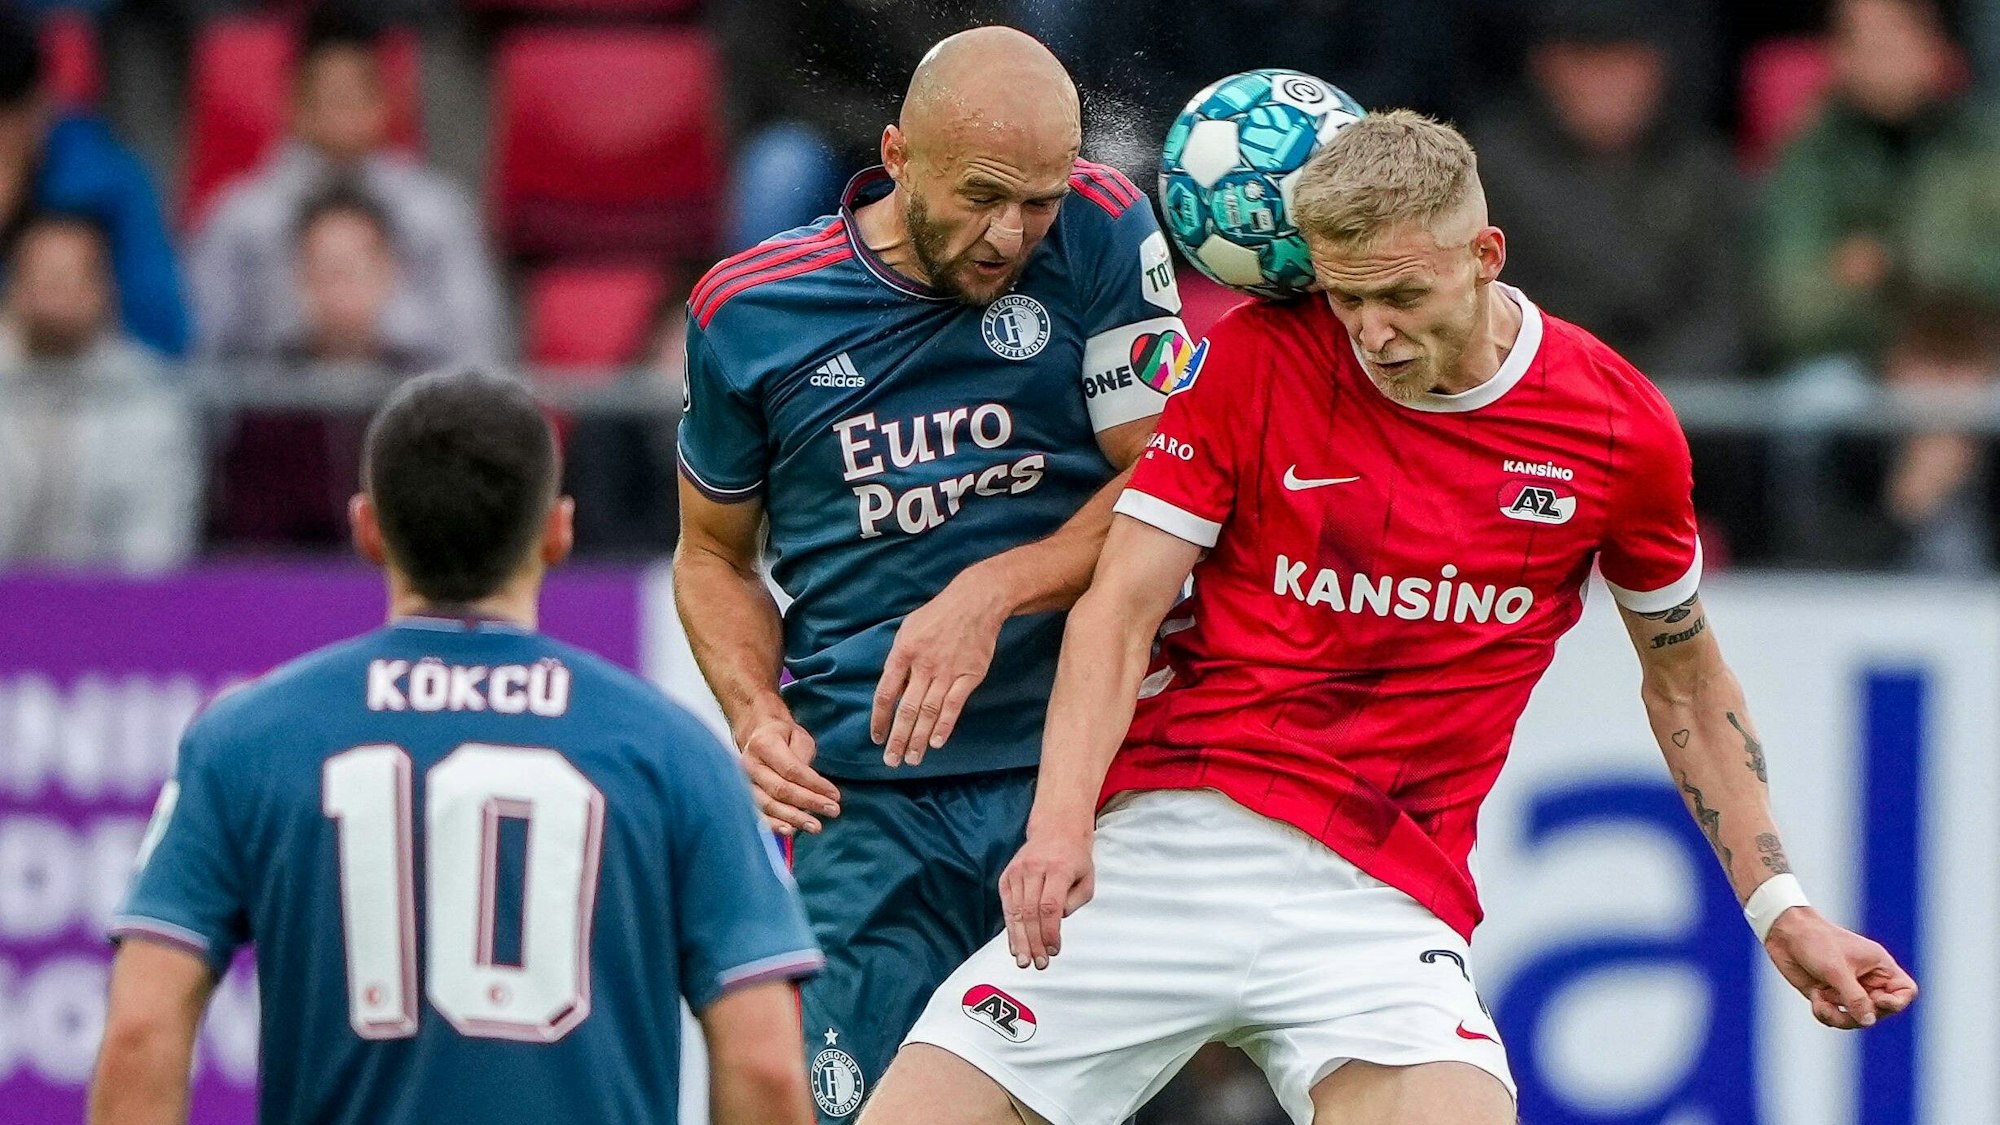 Gernot Trauner (M.) trägt im Spiel von Feyenoord Rotterdam gegen AZ Alkmaar die „One Love“-Kapitänsbinde, die Orkun Kökcü (v.) nicht am Arm haben wollte.